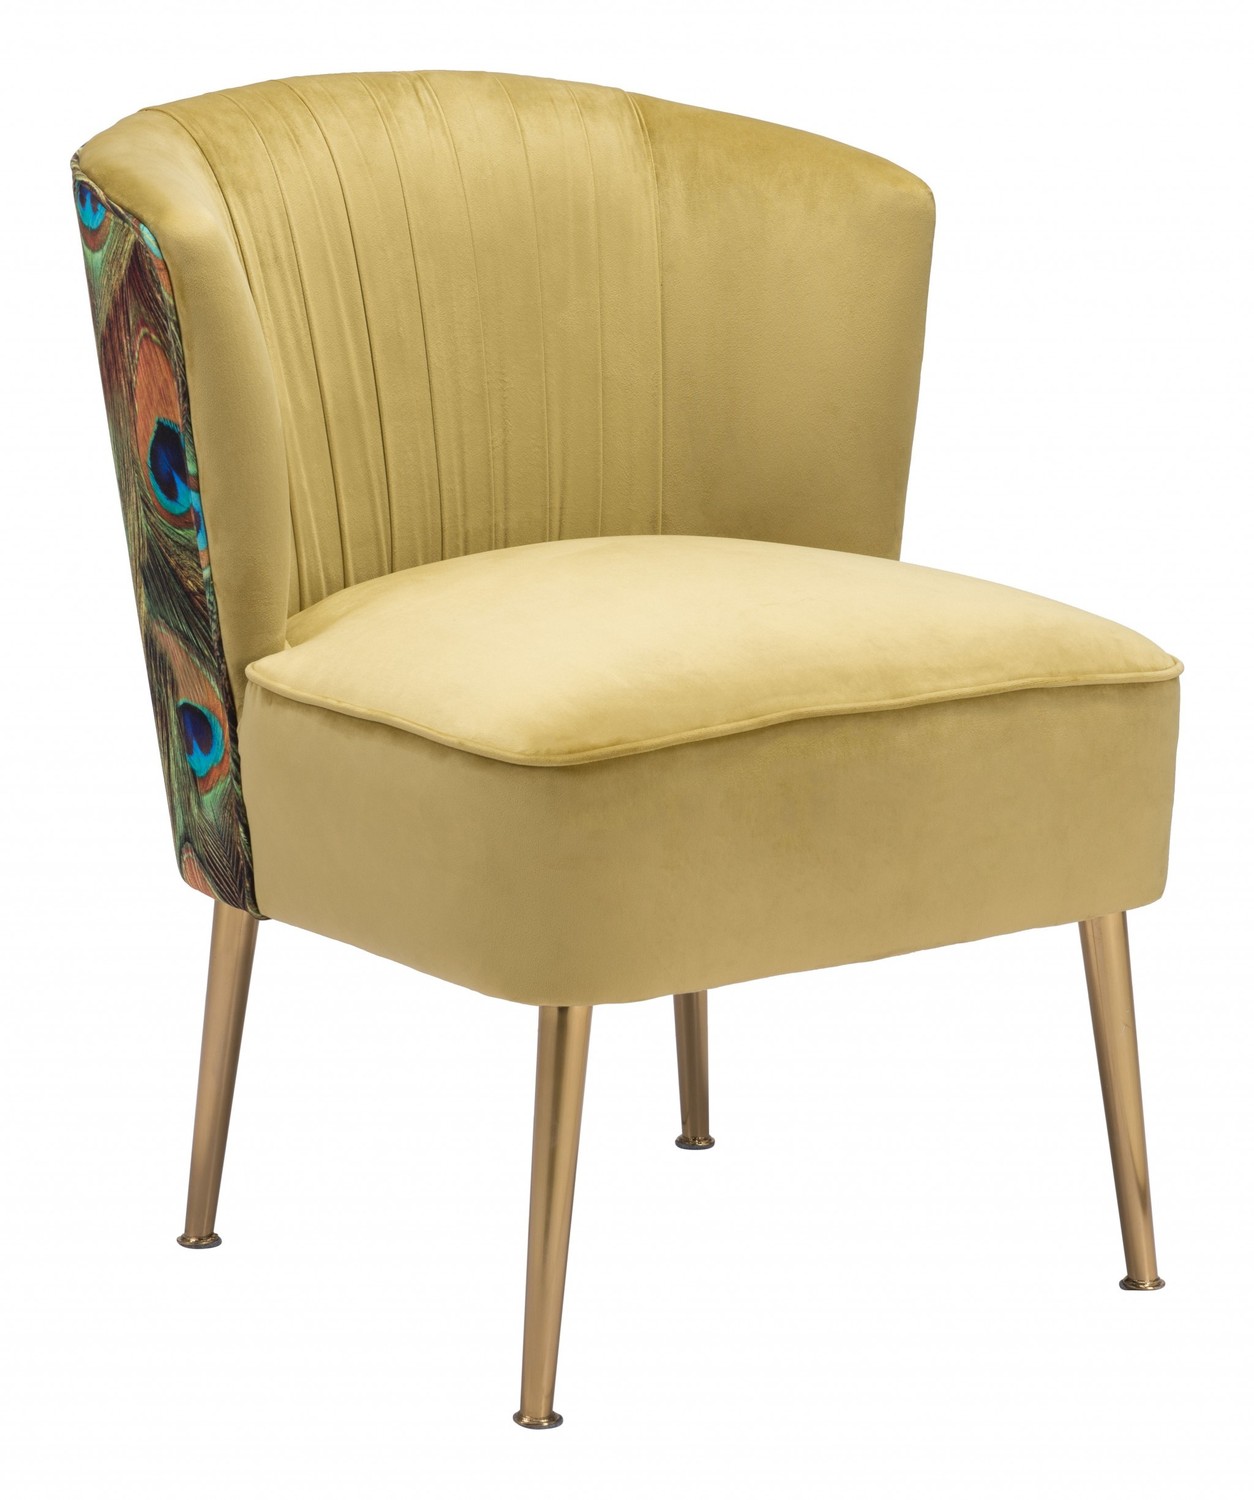 Tabitha Accent Chair Green Gold & Peacock Print